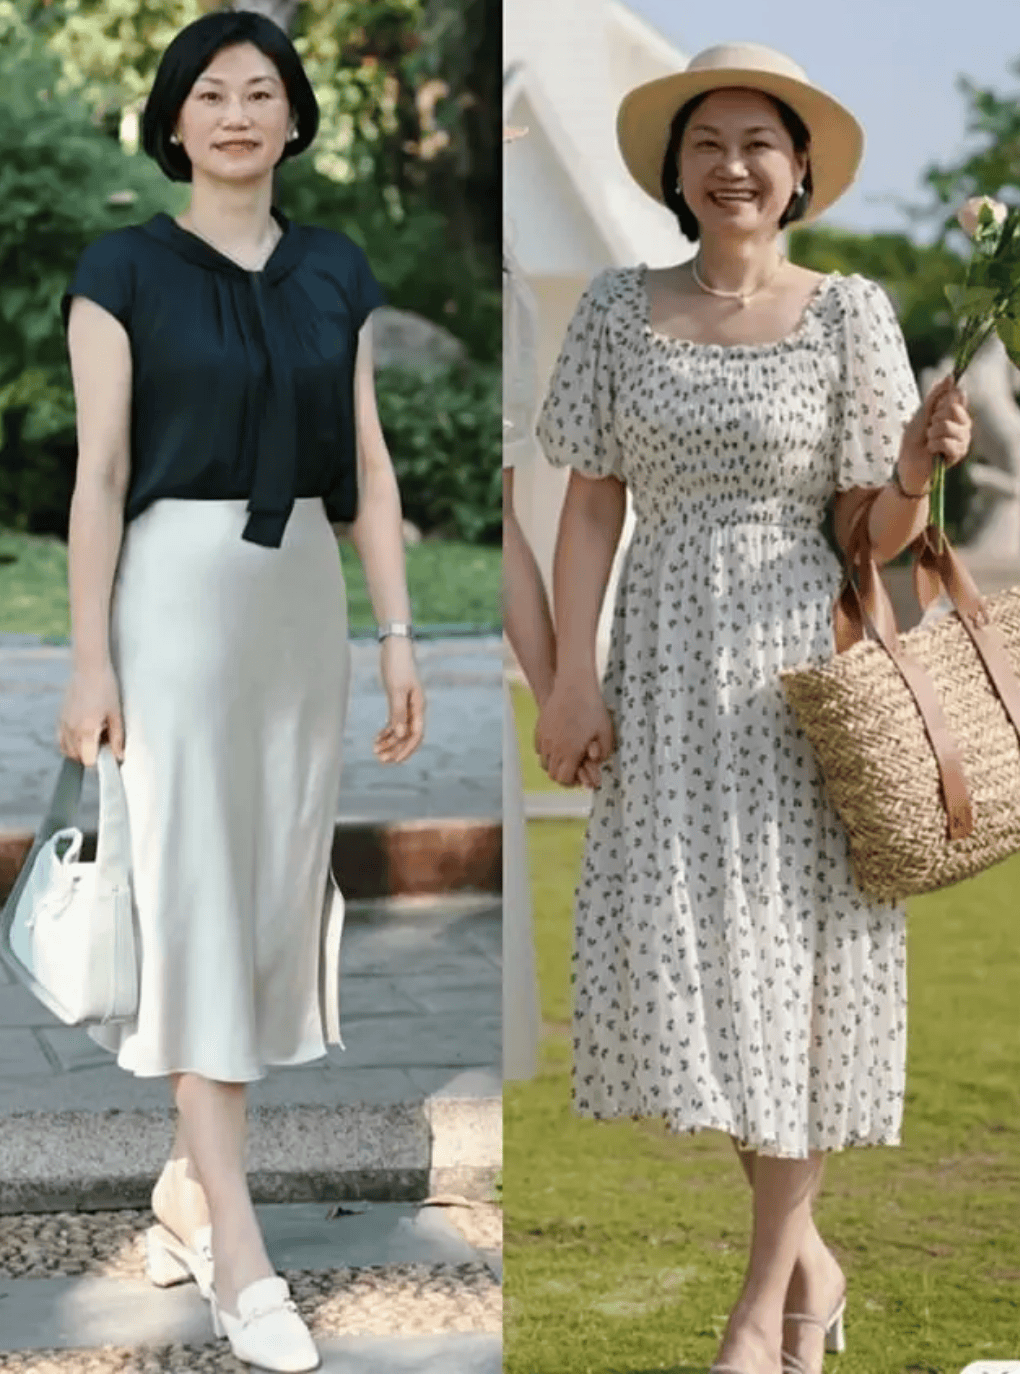 大龄女性夏天穿裙子要记住“3穿3不穿”的法则，既优雅又显瘦。